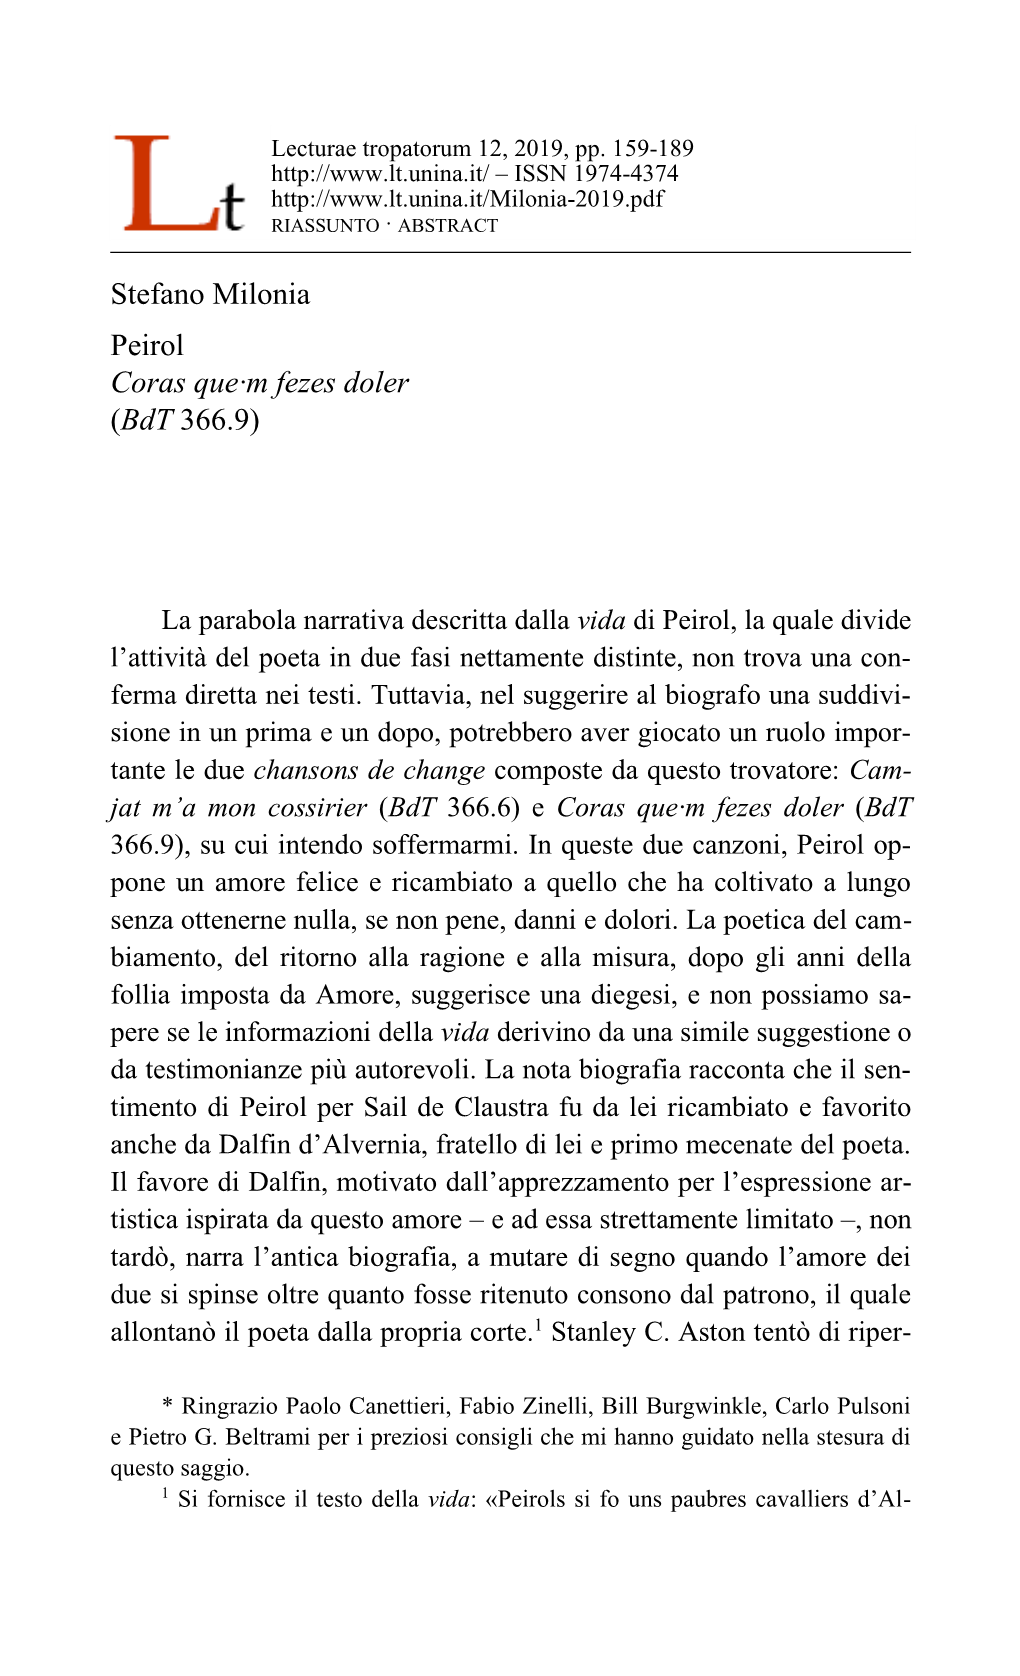 Stefano Milonia Peirol Coras Que·M Fezes Doler (Bdt 366.9)